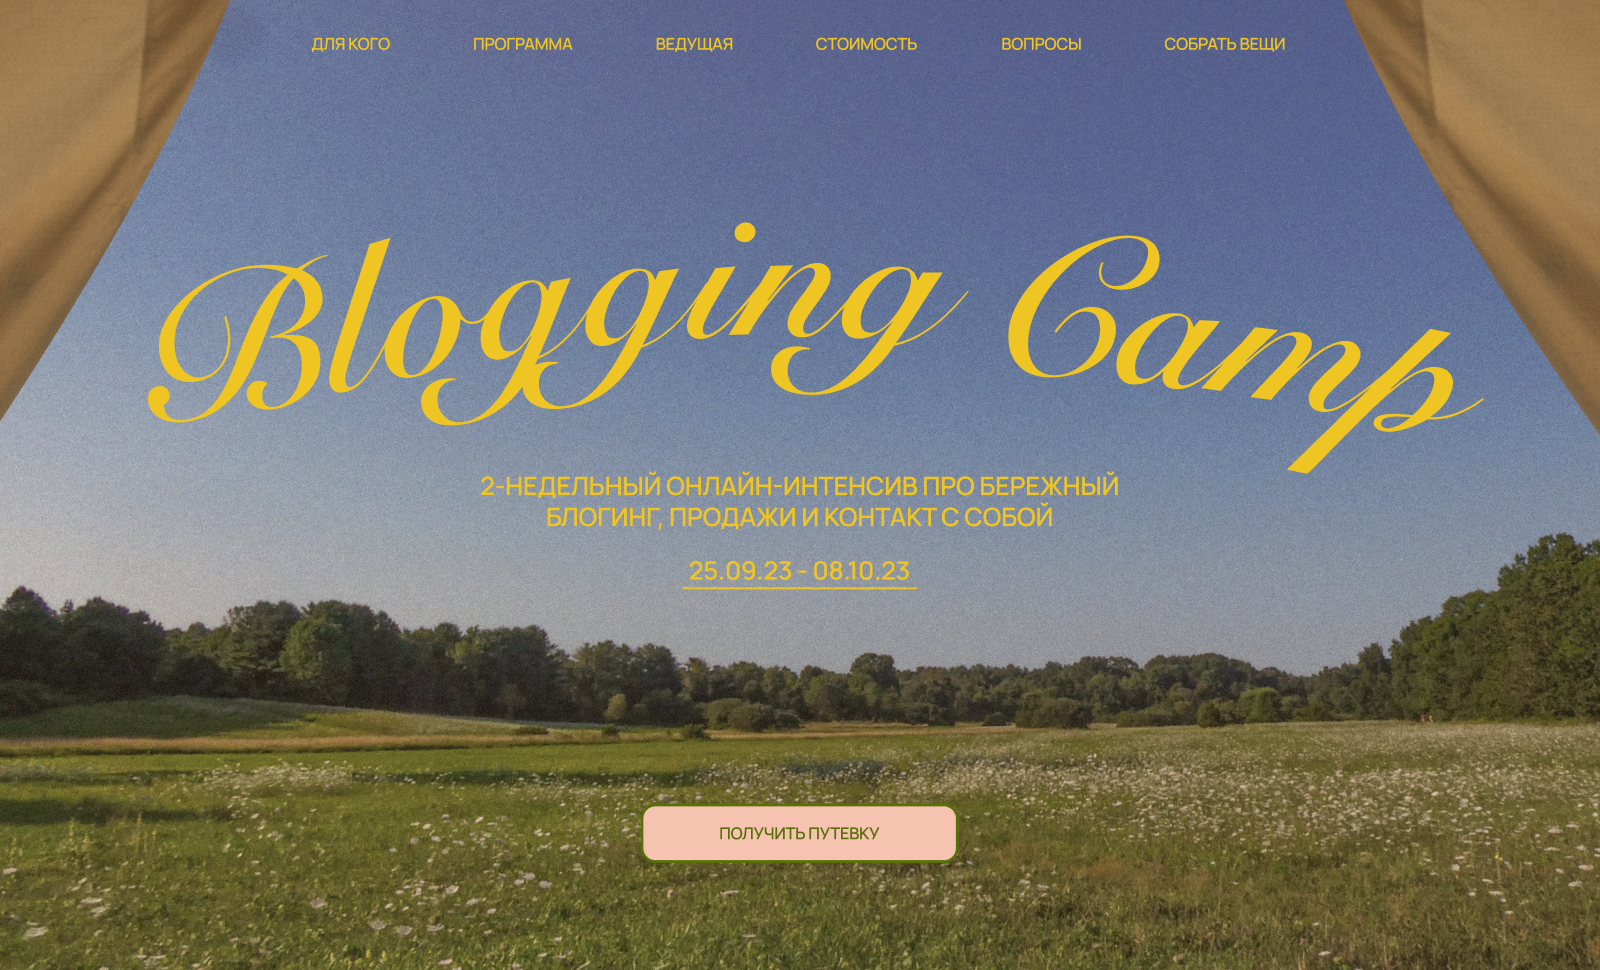 Blogging Camp